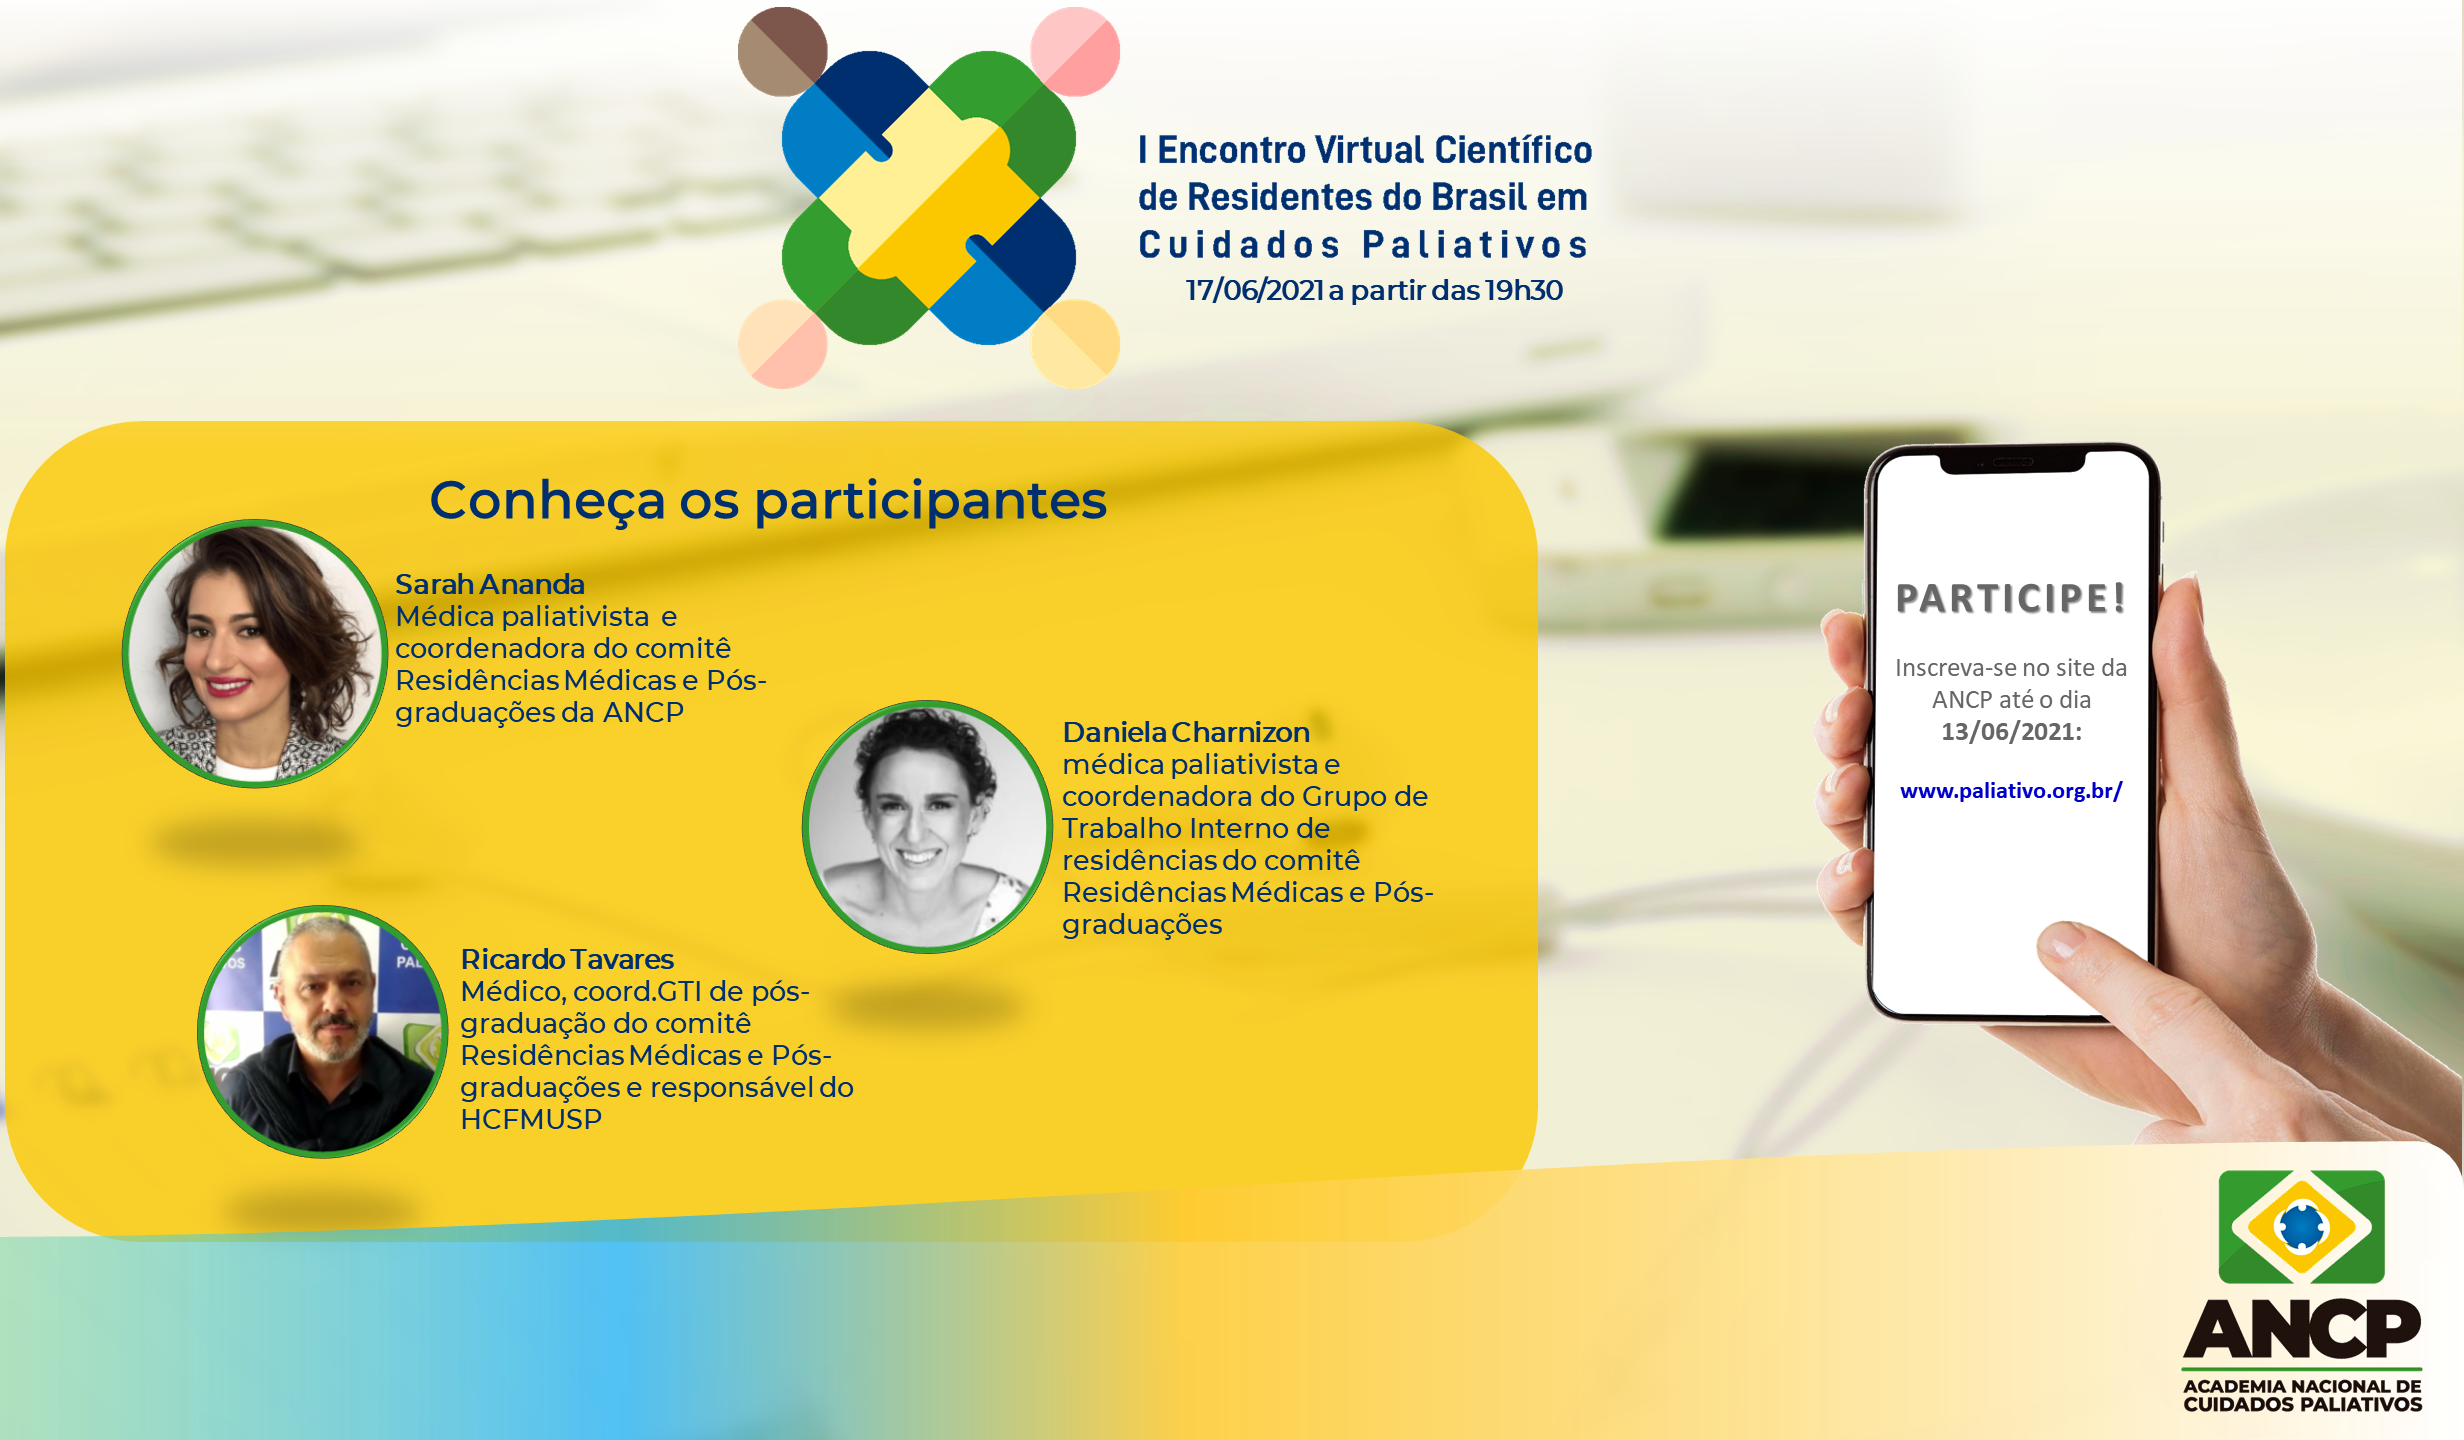 I Encontro Virtual Científico de Residentes do Brasil em Cuidados Paliativos é realizado pelo Comitê de Residências Médicas e Pós-graduações da ANCP